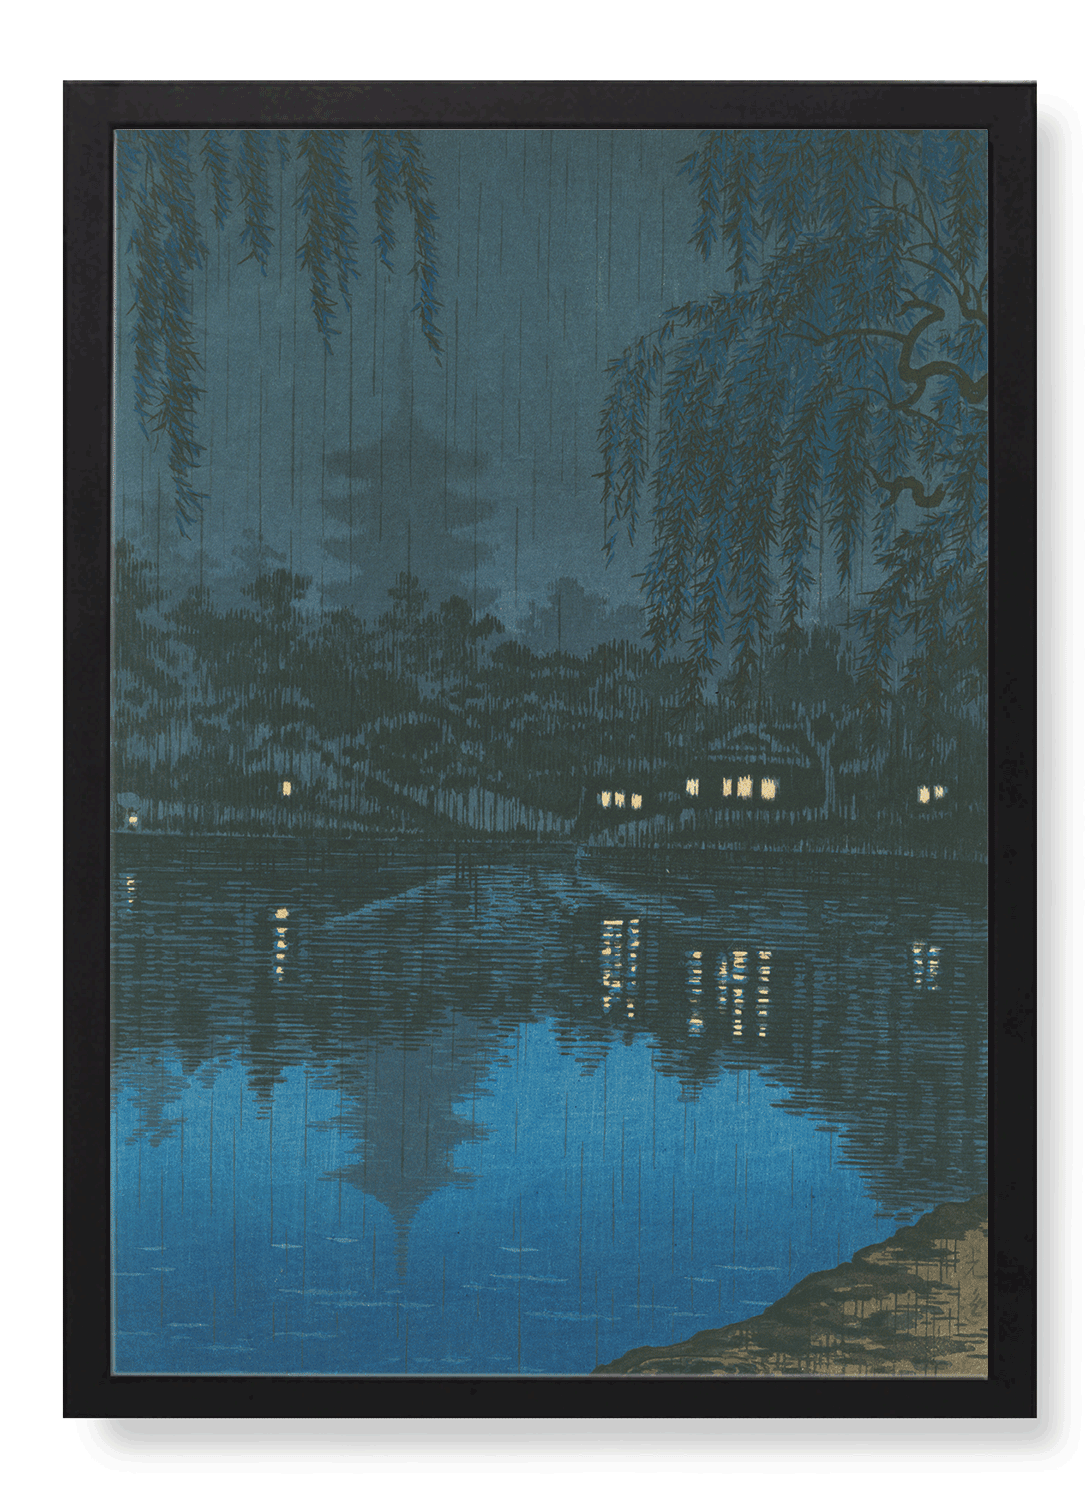 POND OF SARUSAWA LAKE (1941)